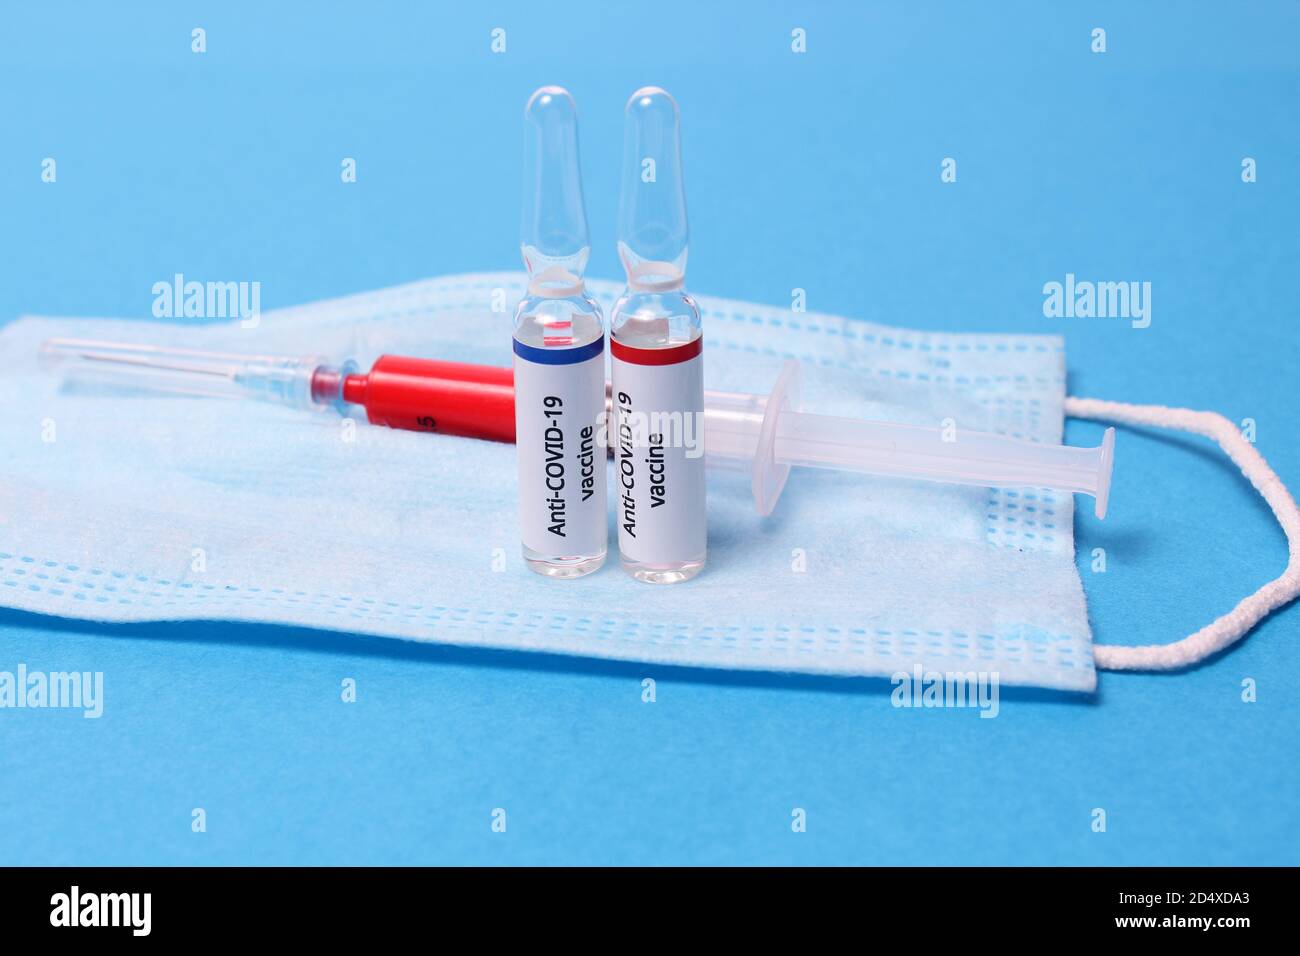 Dos ampollas de medicamento con vacuna anticovid contra el sars y jeringa sobre máscara de protección sobre fondo azul Foto de stock